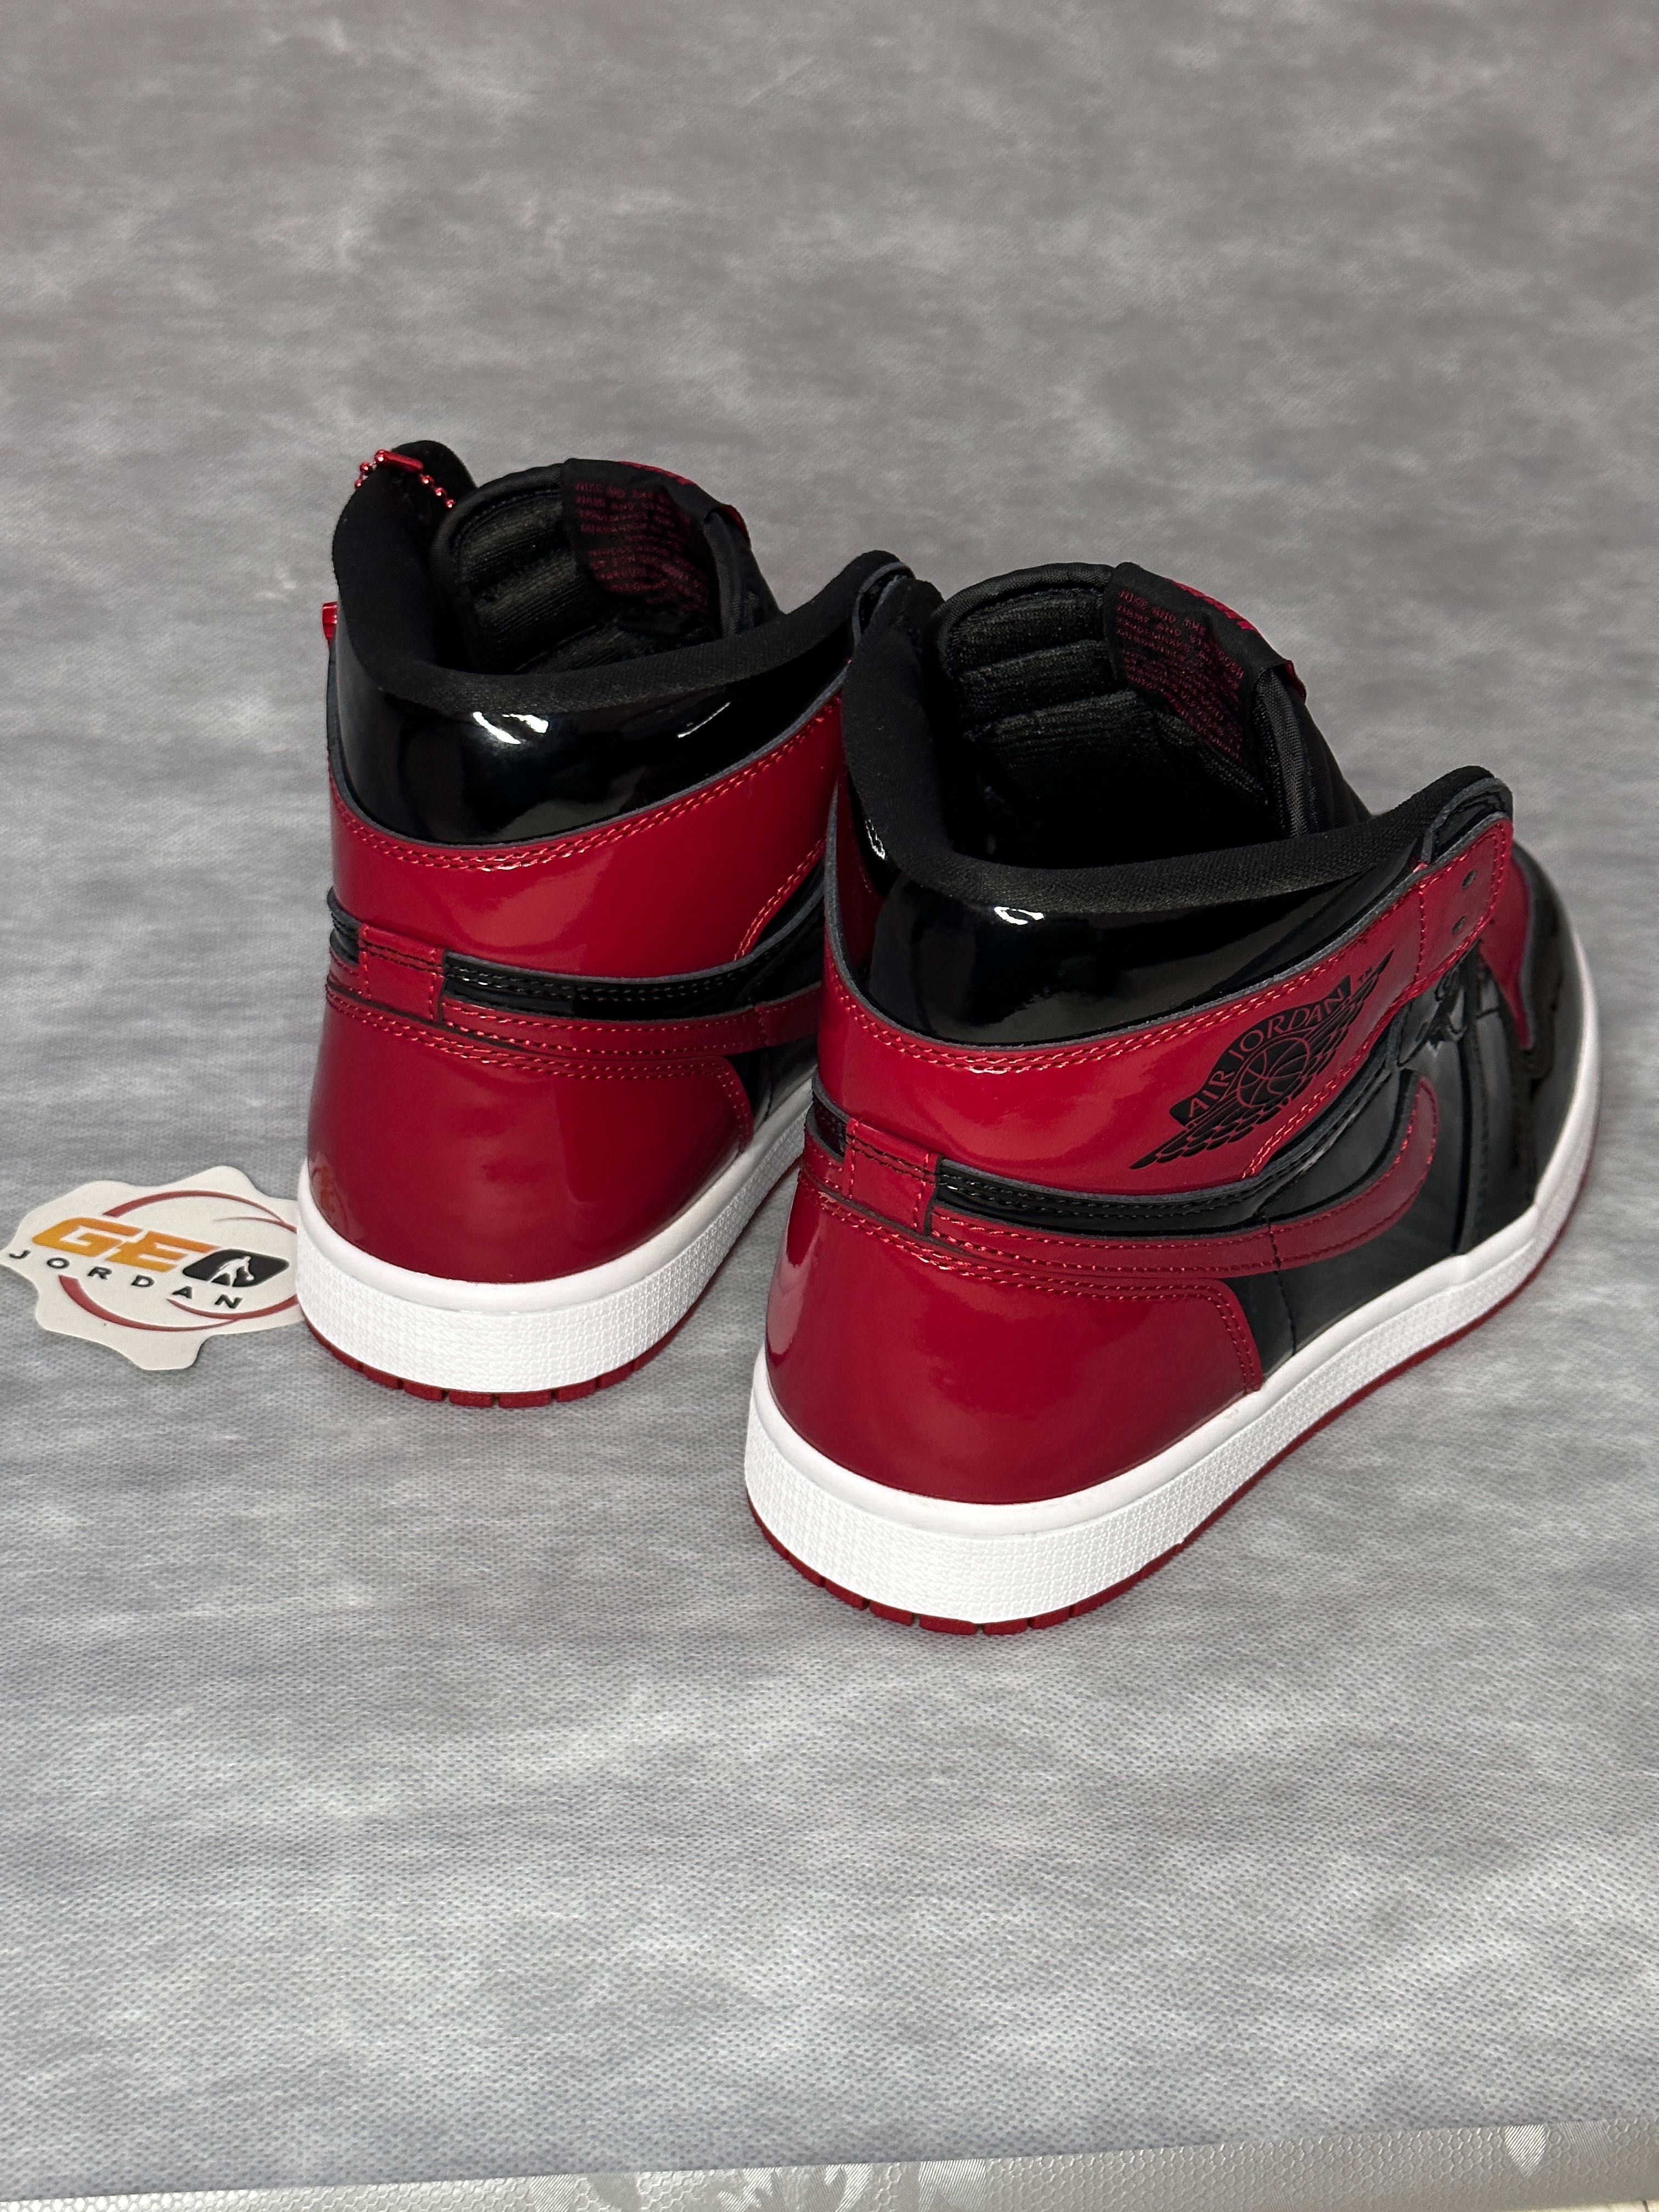 Nike Air Jordan 1 Retro High - Bred Patent